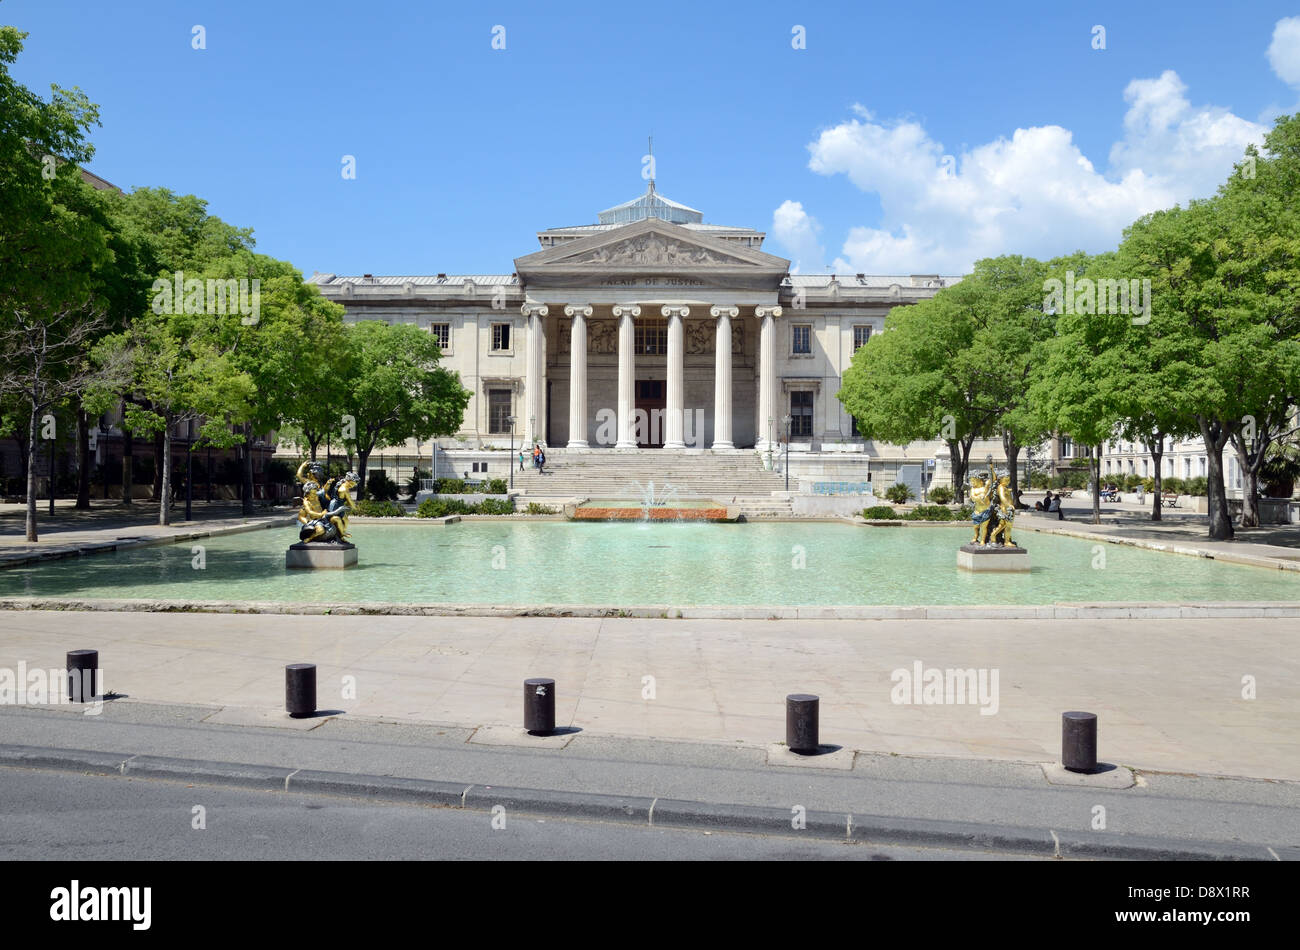 Neoklassische Architektur des Palais de Justice (1856-1862), Gerichtshöfe von Marseille oder Gerichtsgebäude am Place Montyon Marseille Provence France Stockfoto